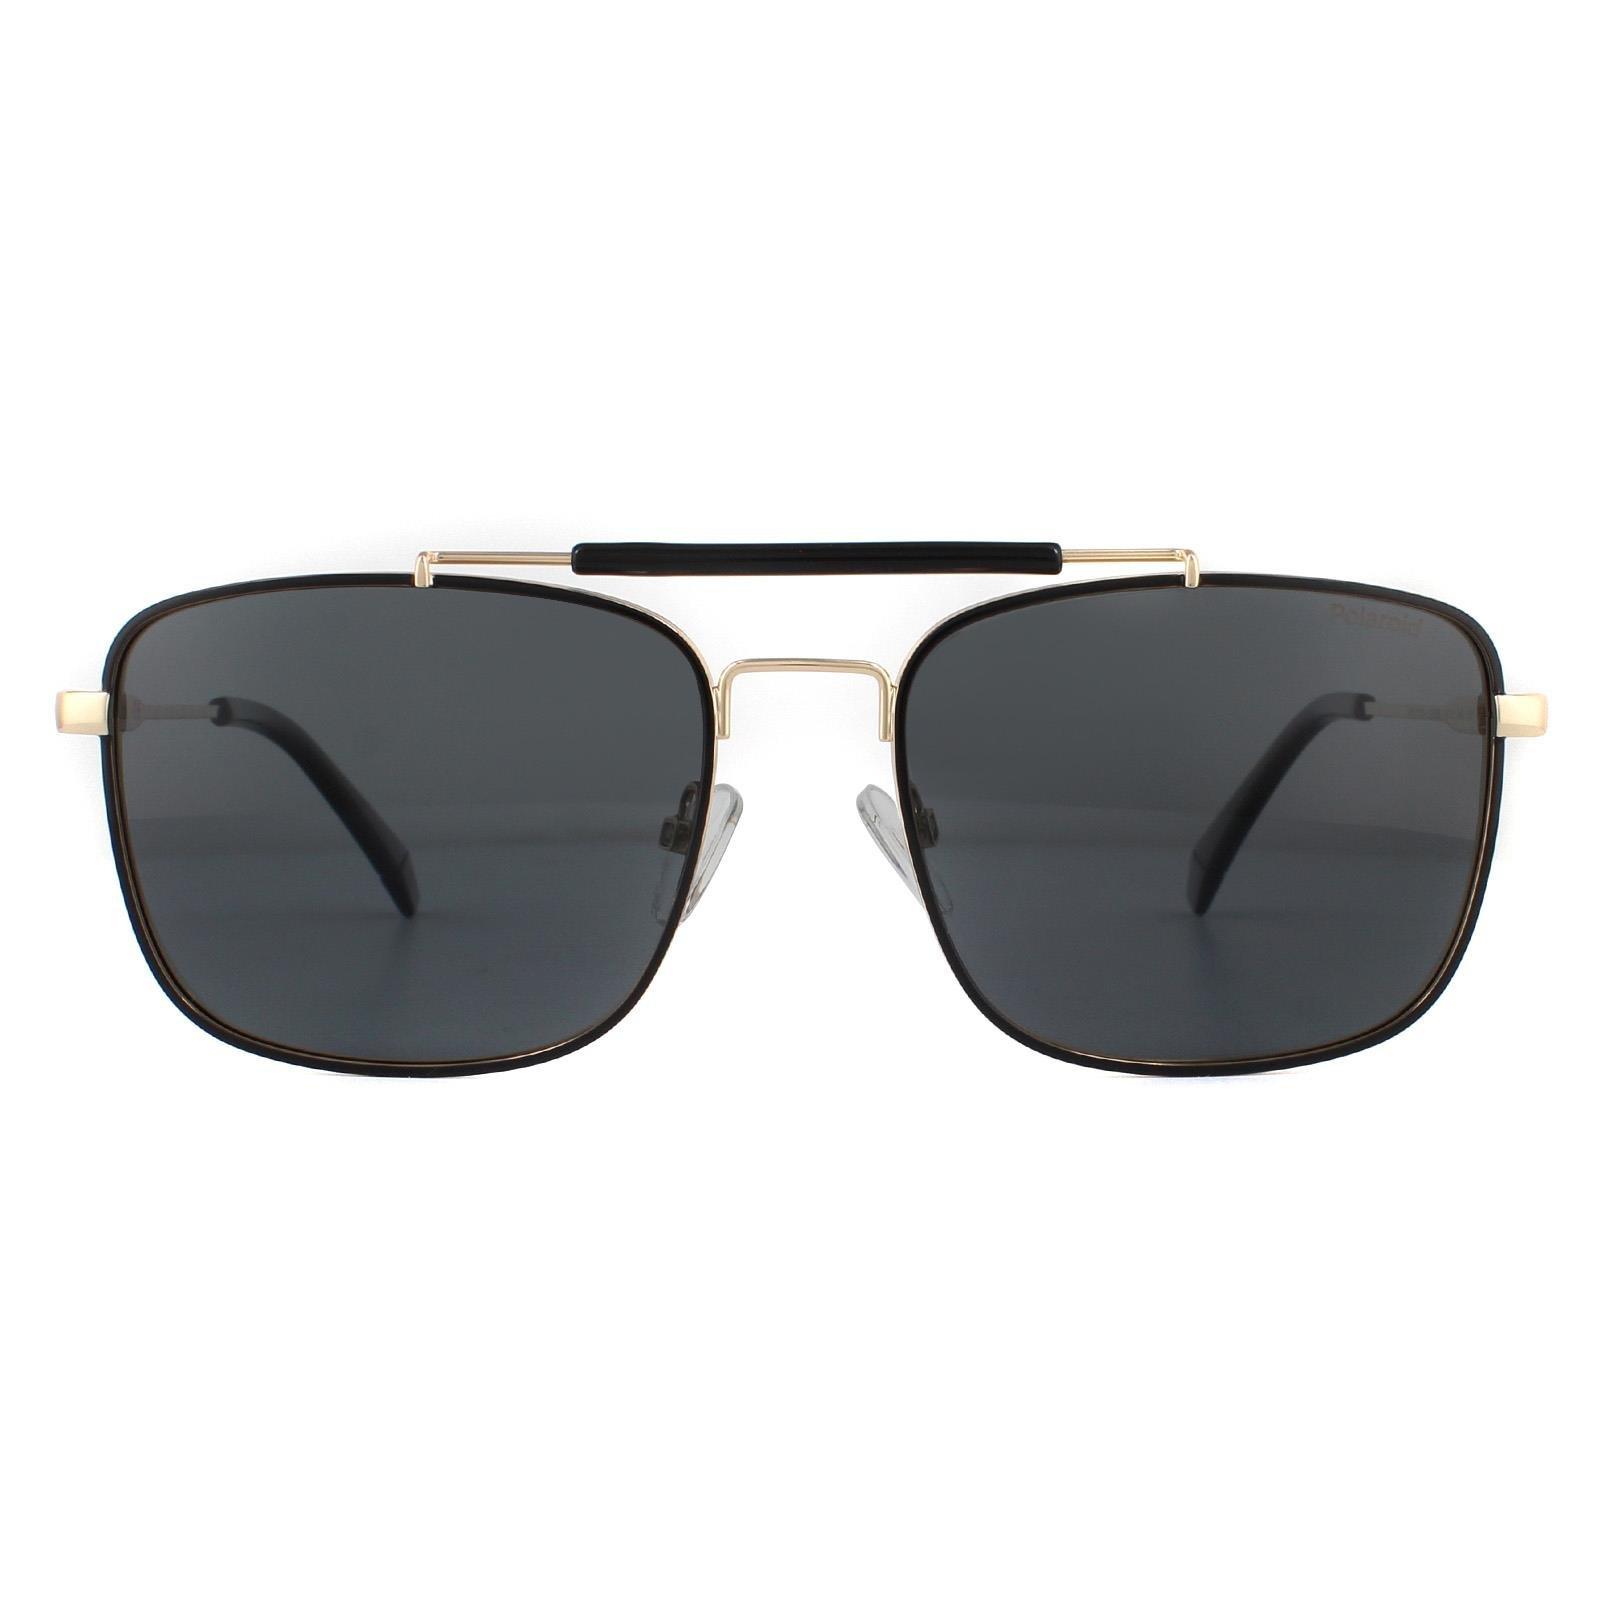 Поляризованные солнцезащитные очки Aviator Black Gold Grey Polaroid, золото polaroid pld 4093 s 1ed